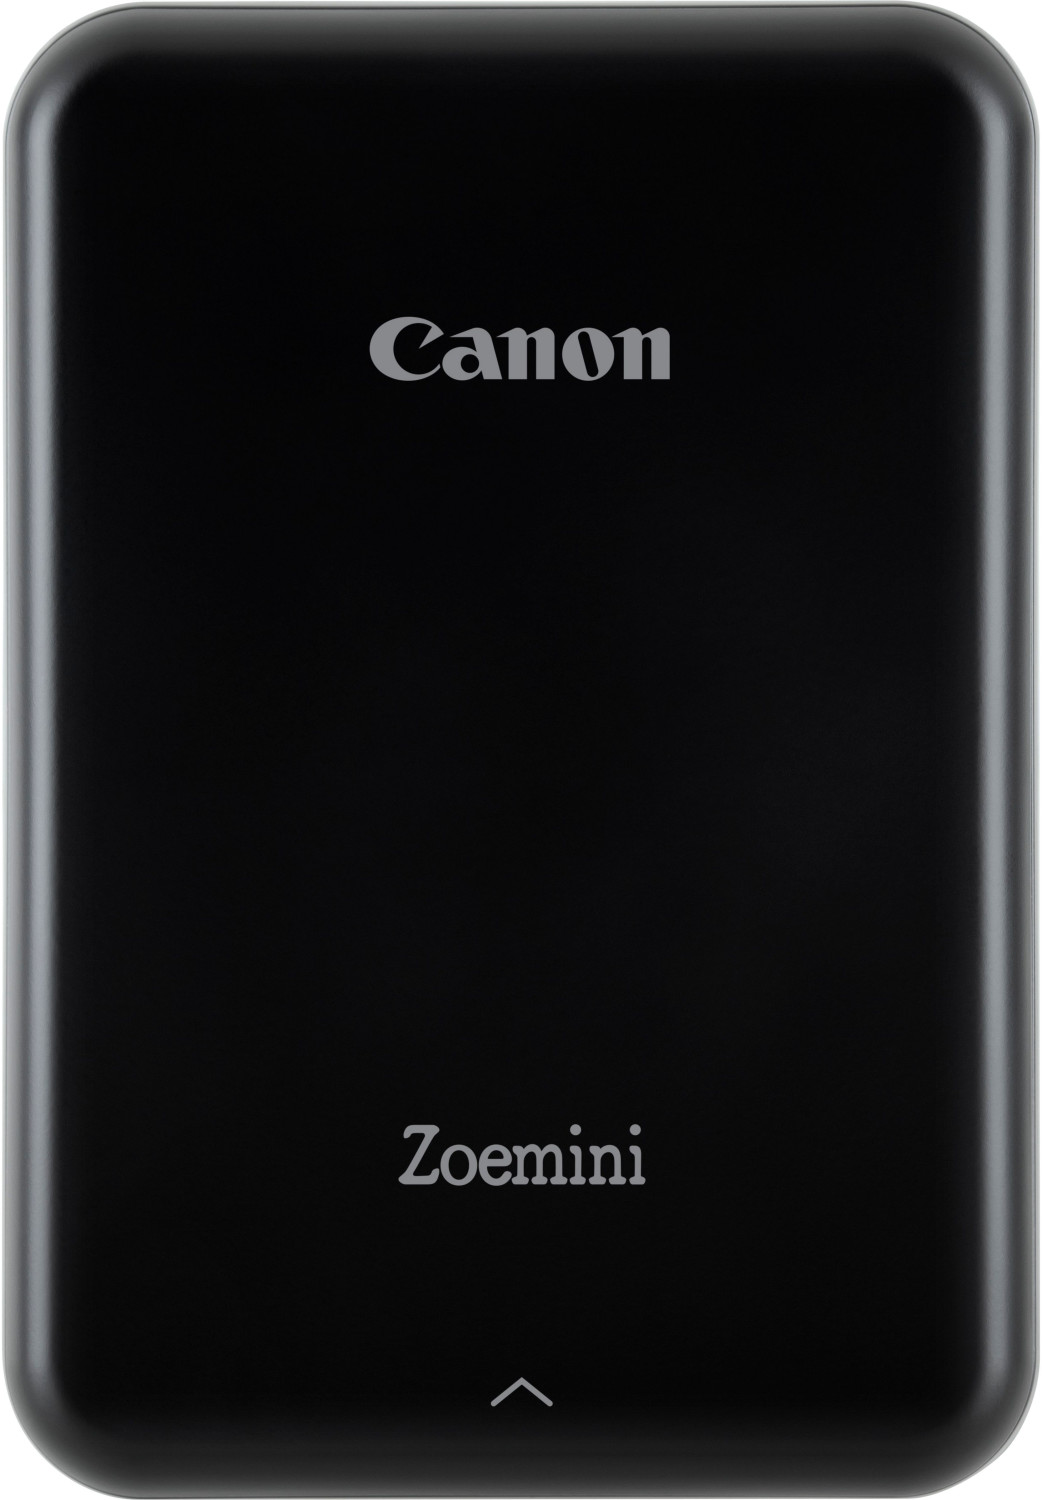 Canon Zoemini black